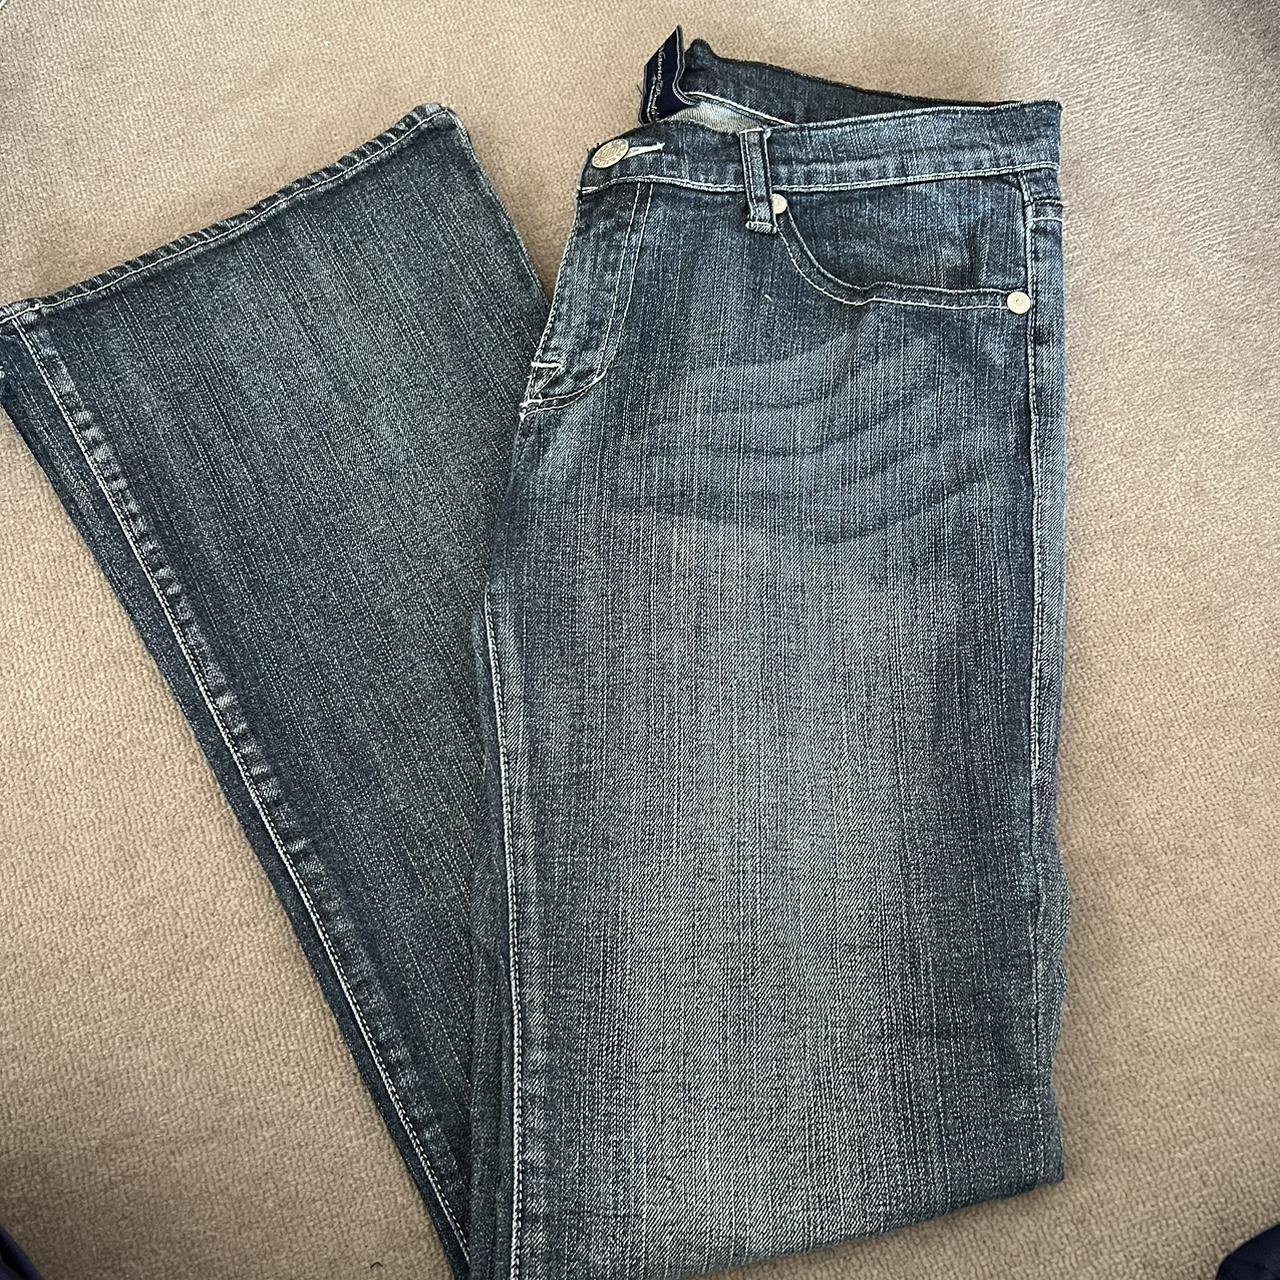 victoria beckem crown pocket jeans size 30 never worn - Depop